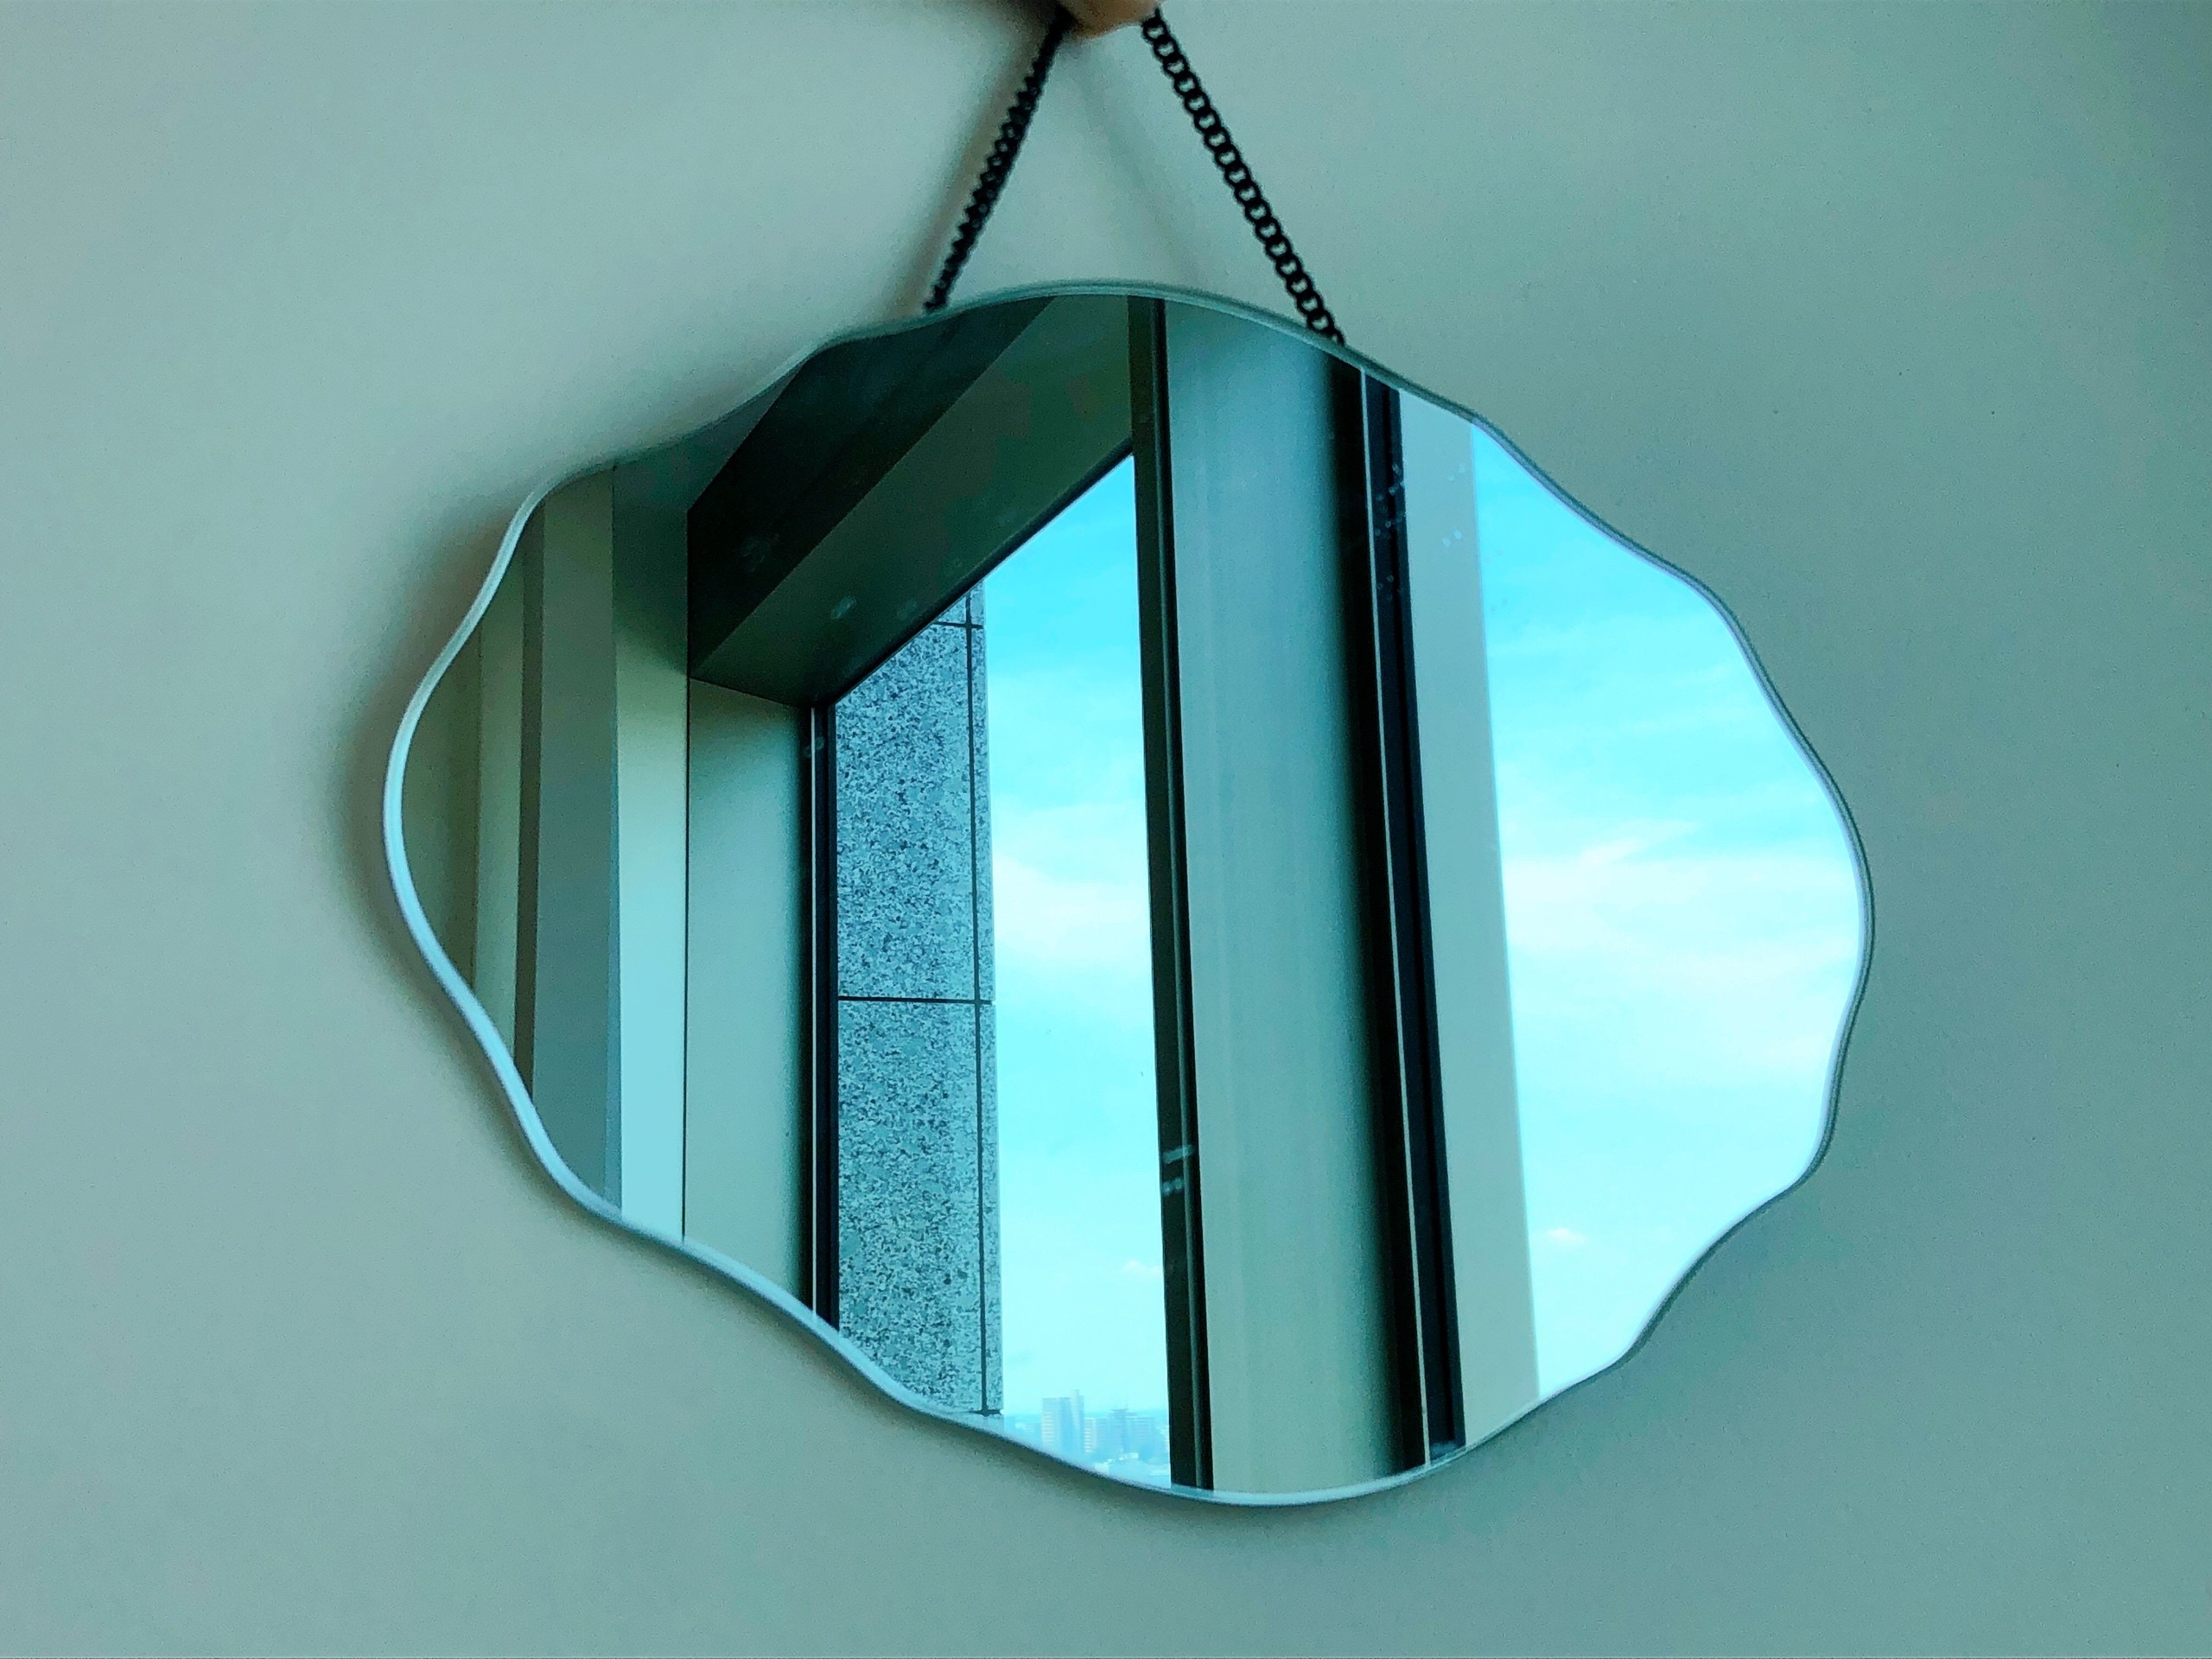 IKEA（イケア）のおすすめの鏡「ROSSARED ロッサレッド ミラー」